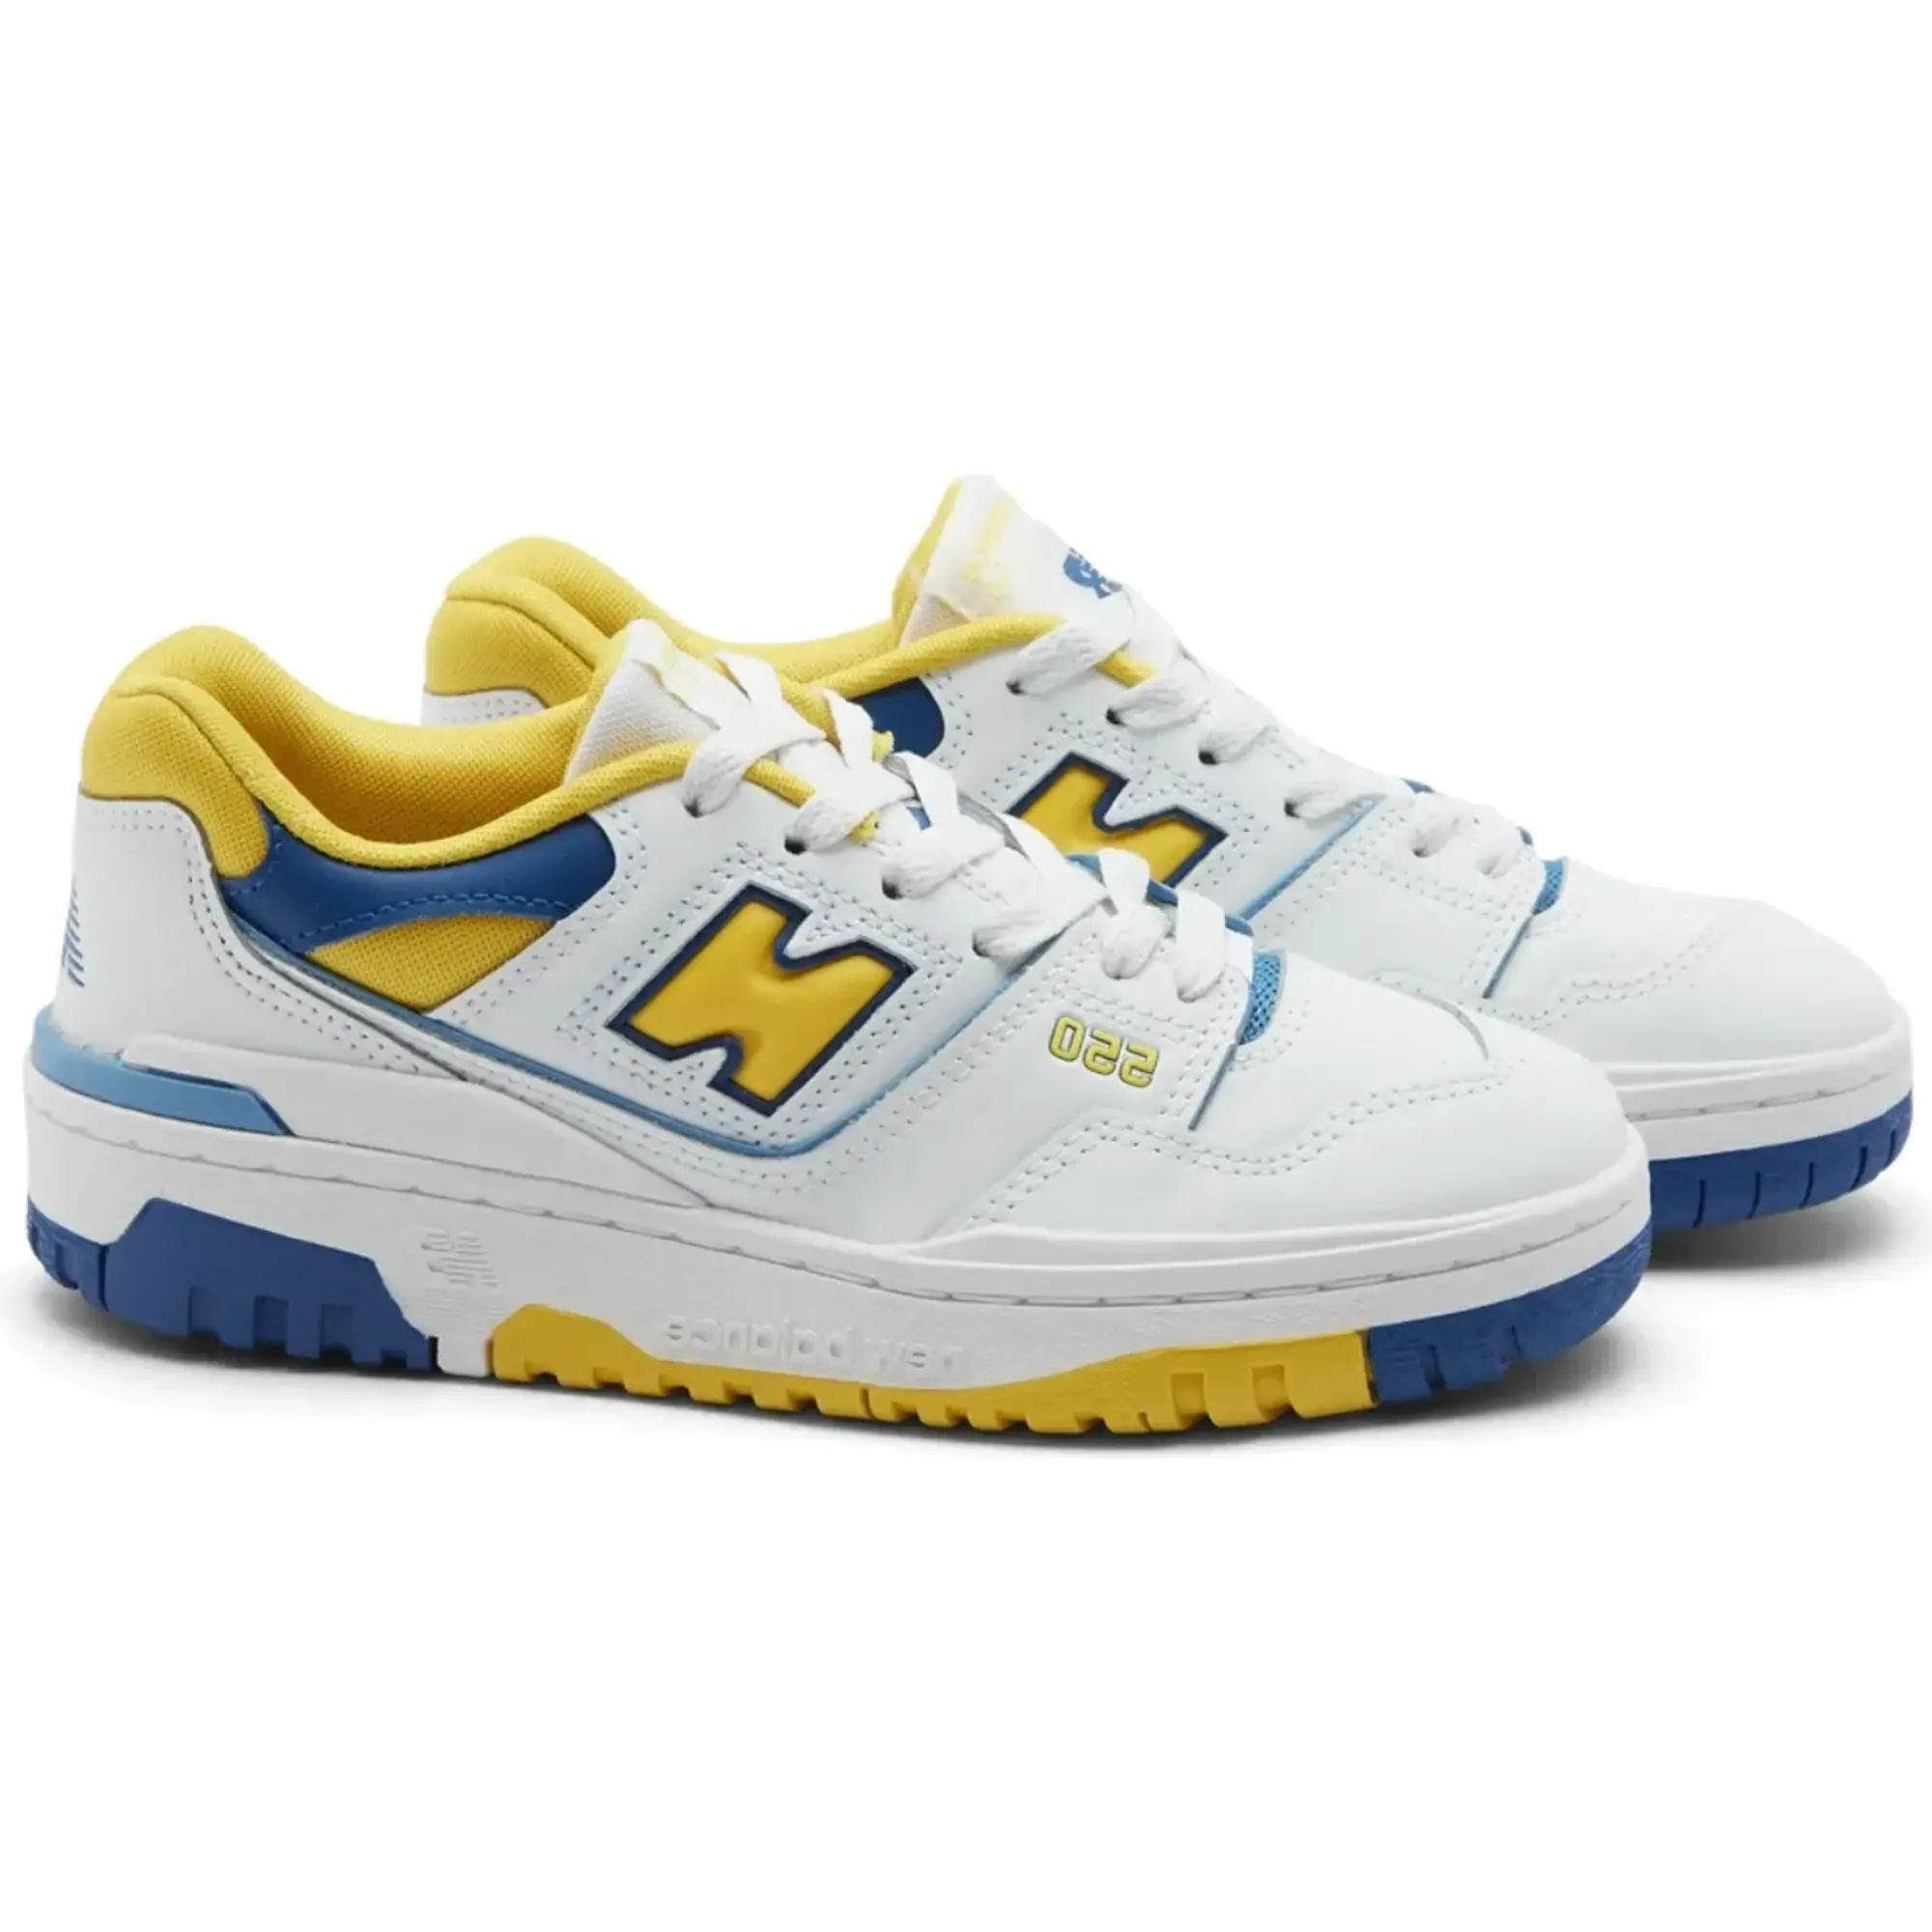 New Balance Junior 550 Trainer - White / Yellow / Blue